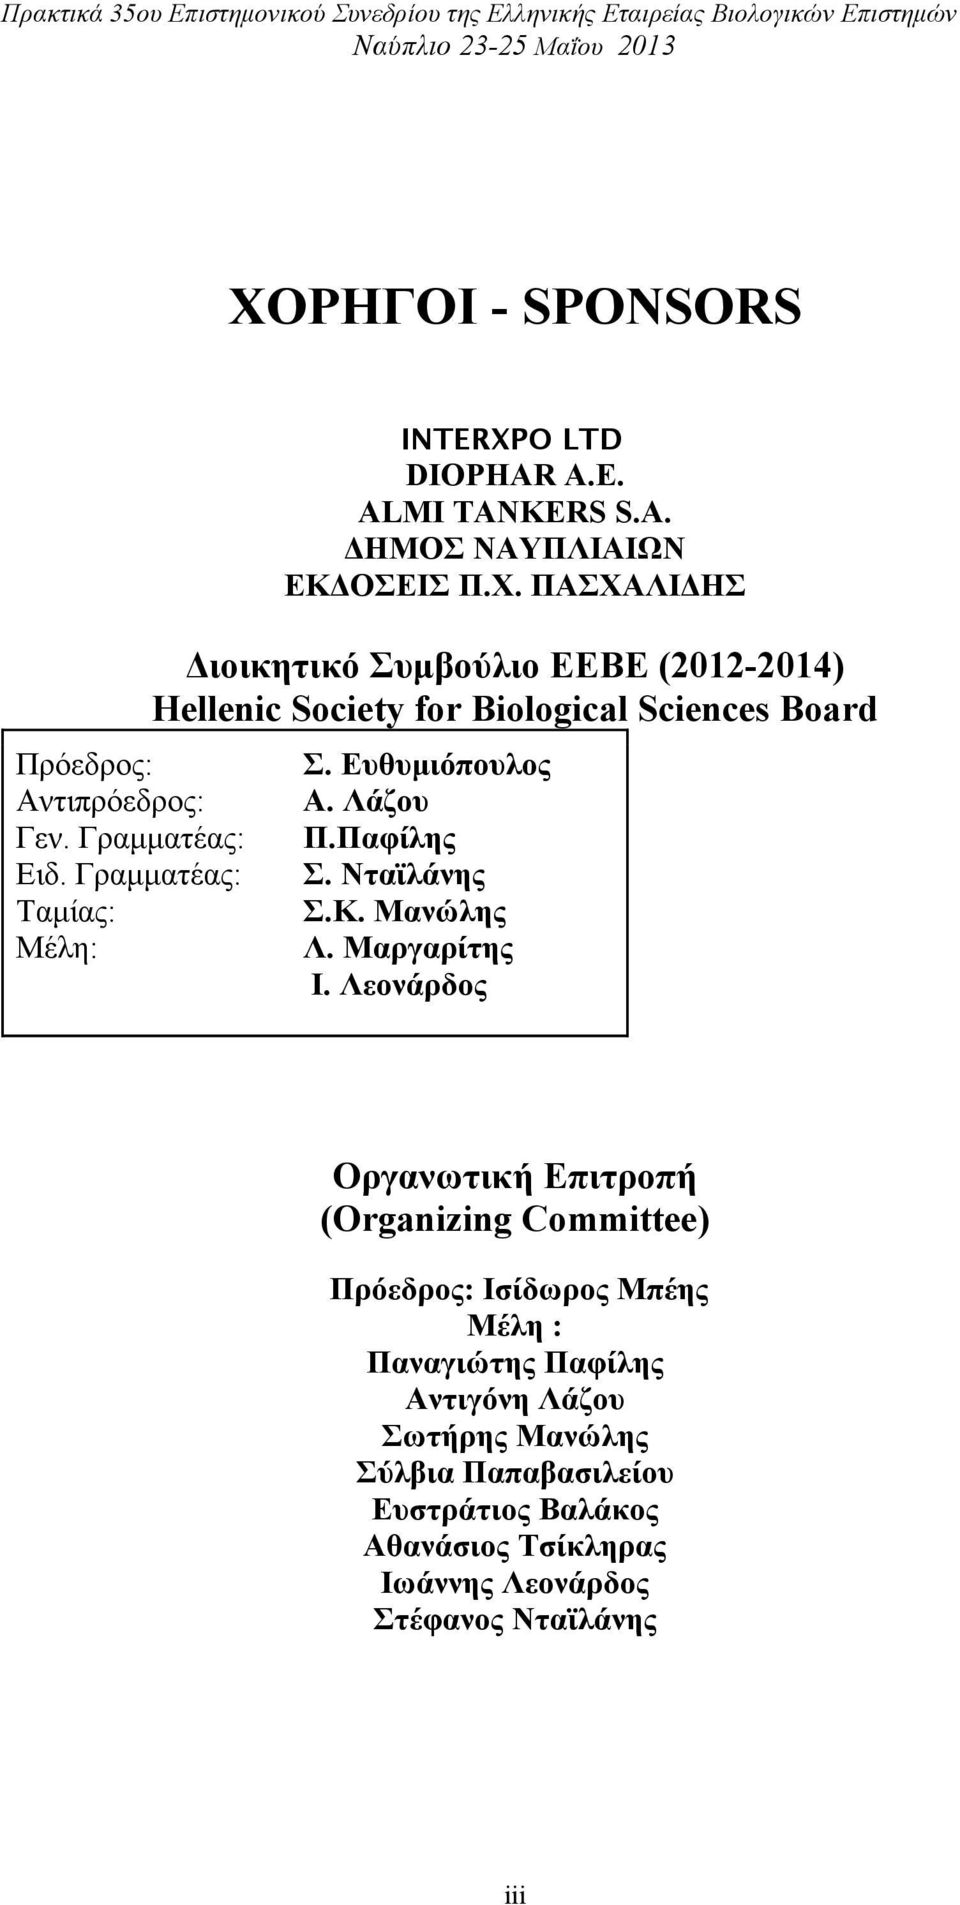 ΠΑΣΧΑΛΙΔΗΣ Διοικητικό Συµβούλιο ΕΕΒΕ (2012-2014) Hellenic Society for Biological Sciences Board Σ. Ευθυµιόπoυλος Α. Λάζου Π.Παφίλης Σ. Νταϊλάνης Σ.Κ. Μανώλης Λ.